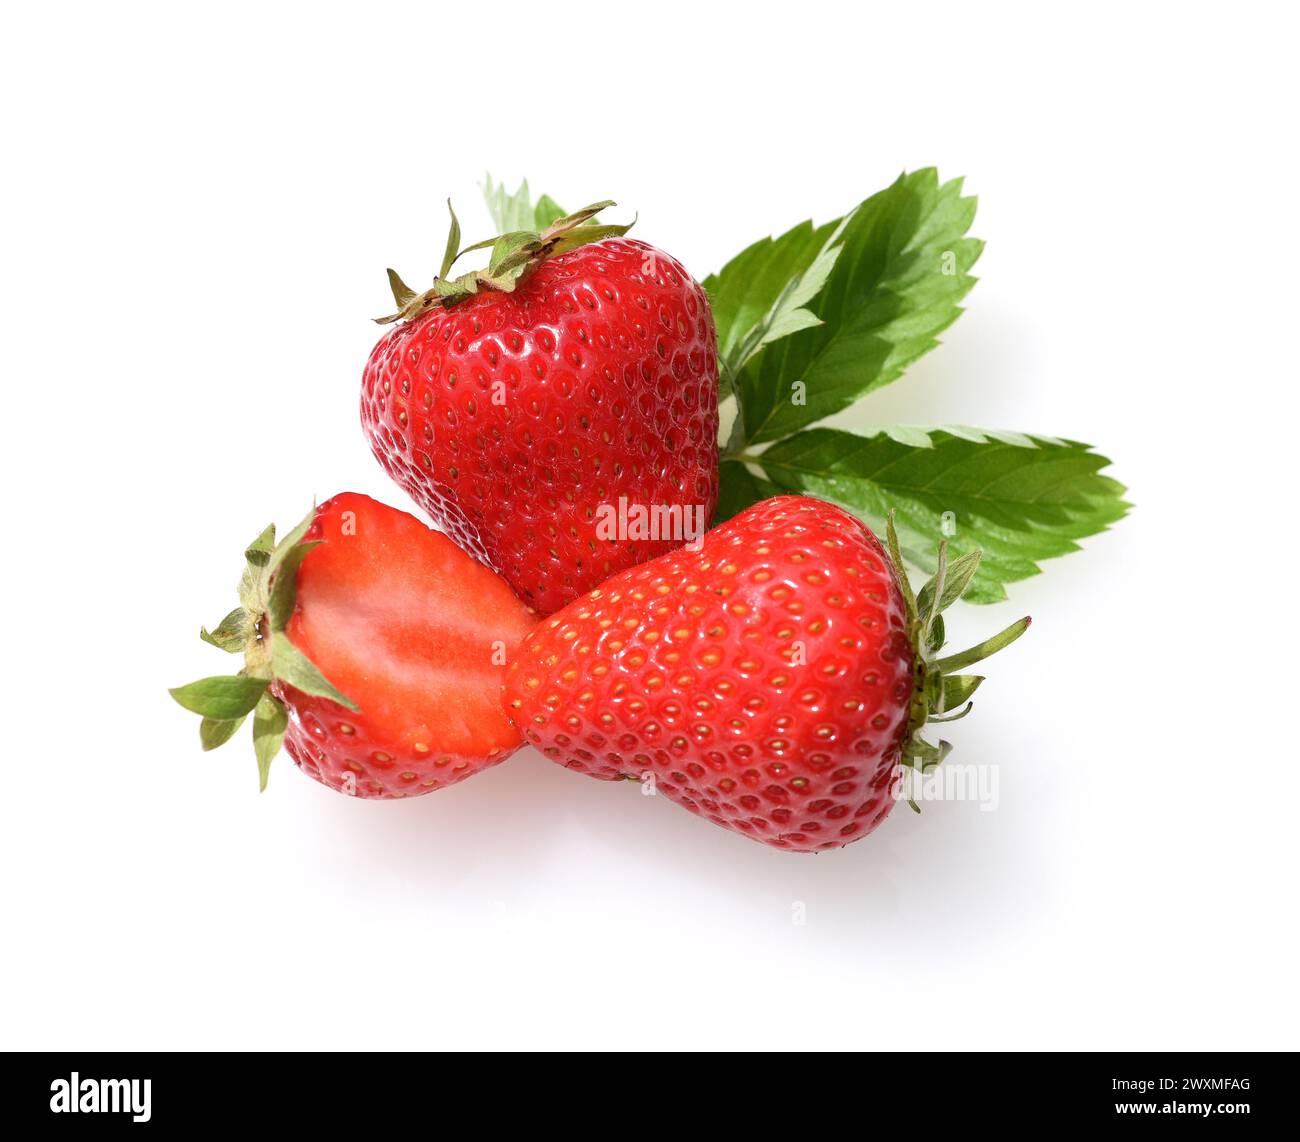 Erdbeeren aus dem eigenen Garten zu ernten, ist eine ganz besondere Freude. Harvesting strawberries from your own garden is a very special joy. Stock Photo